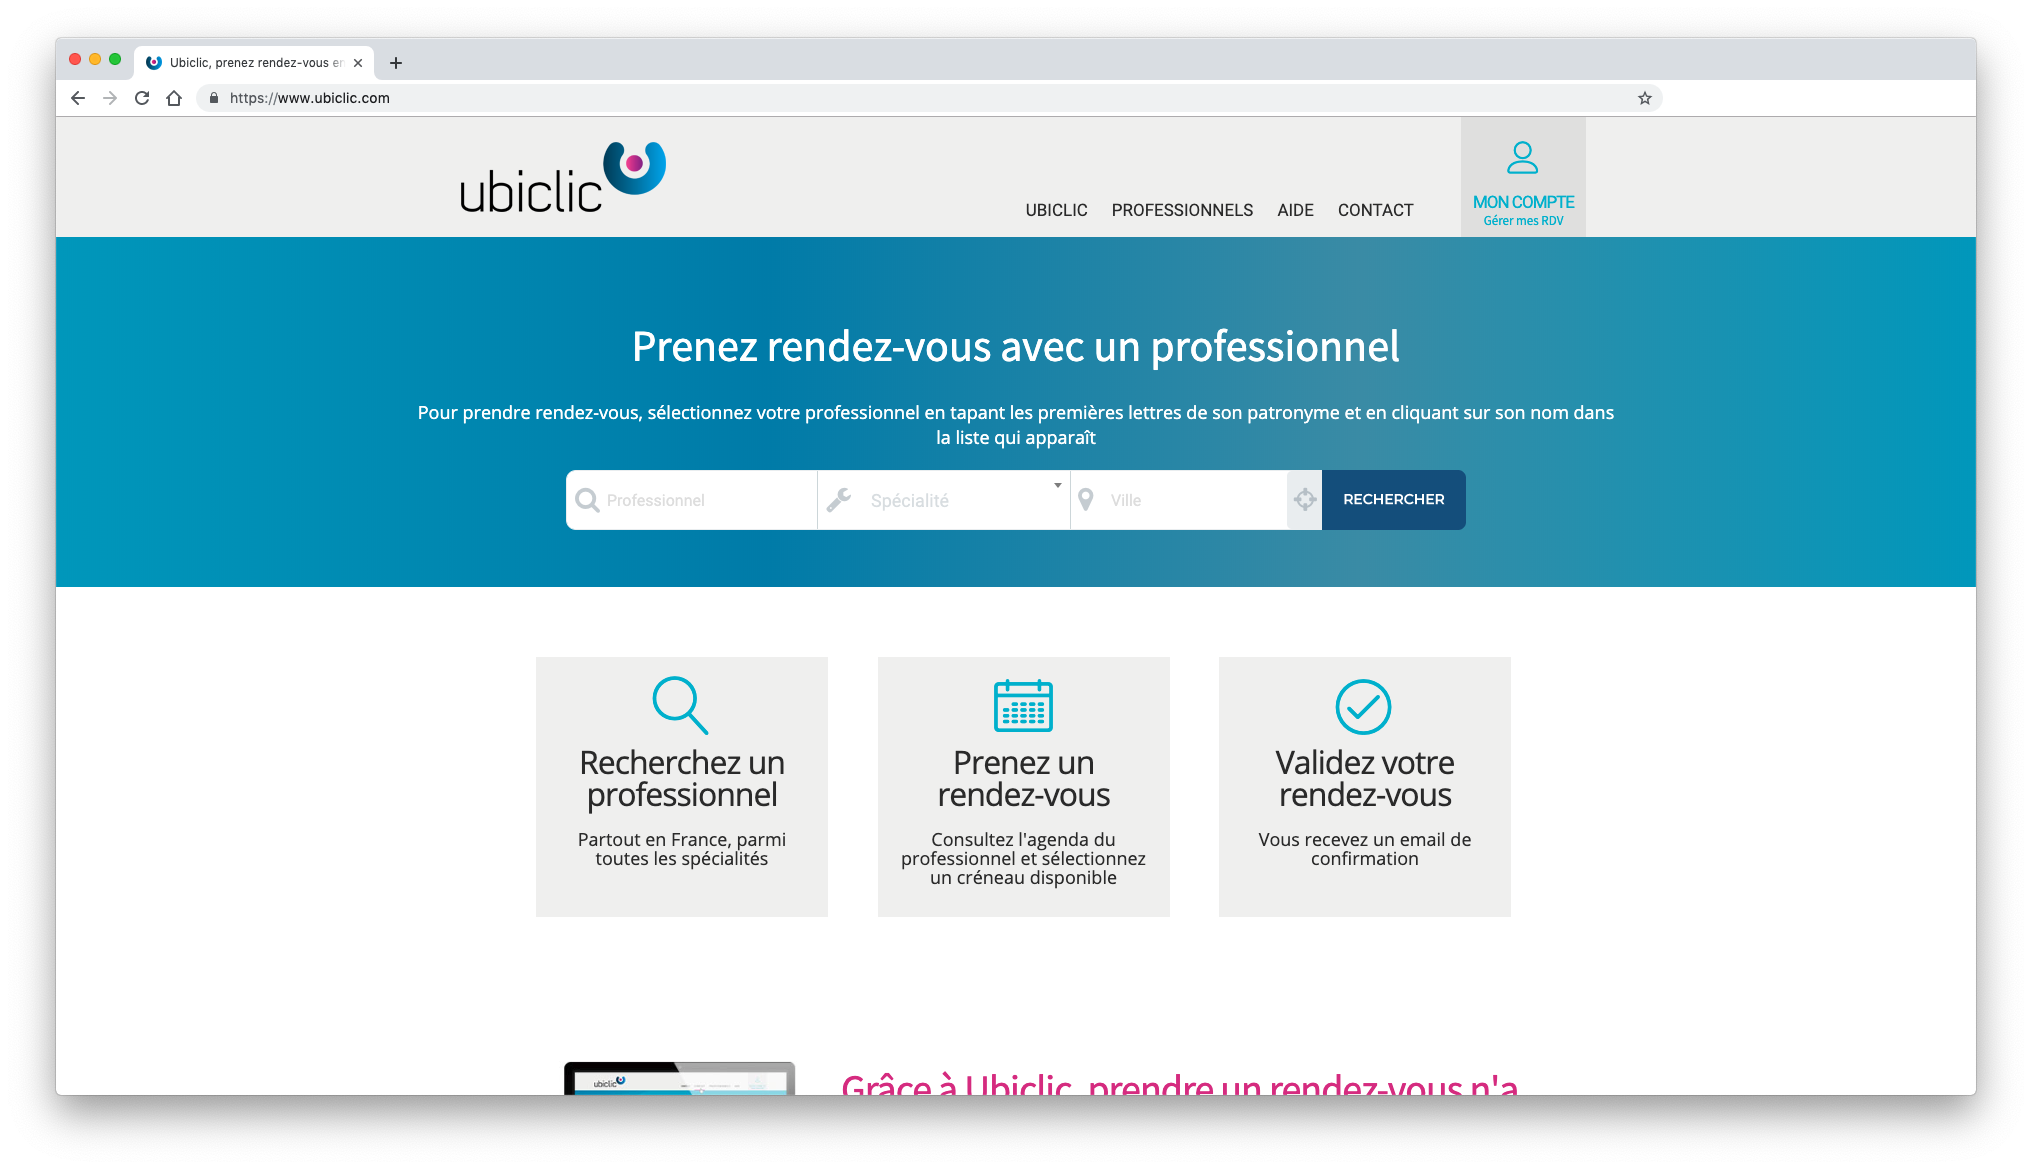 Ubiclic, la prise de rendez-vous par Internet